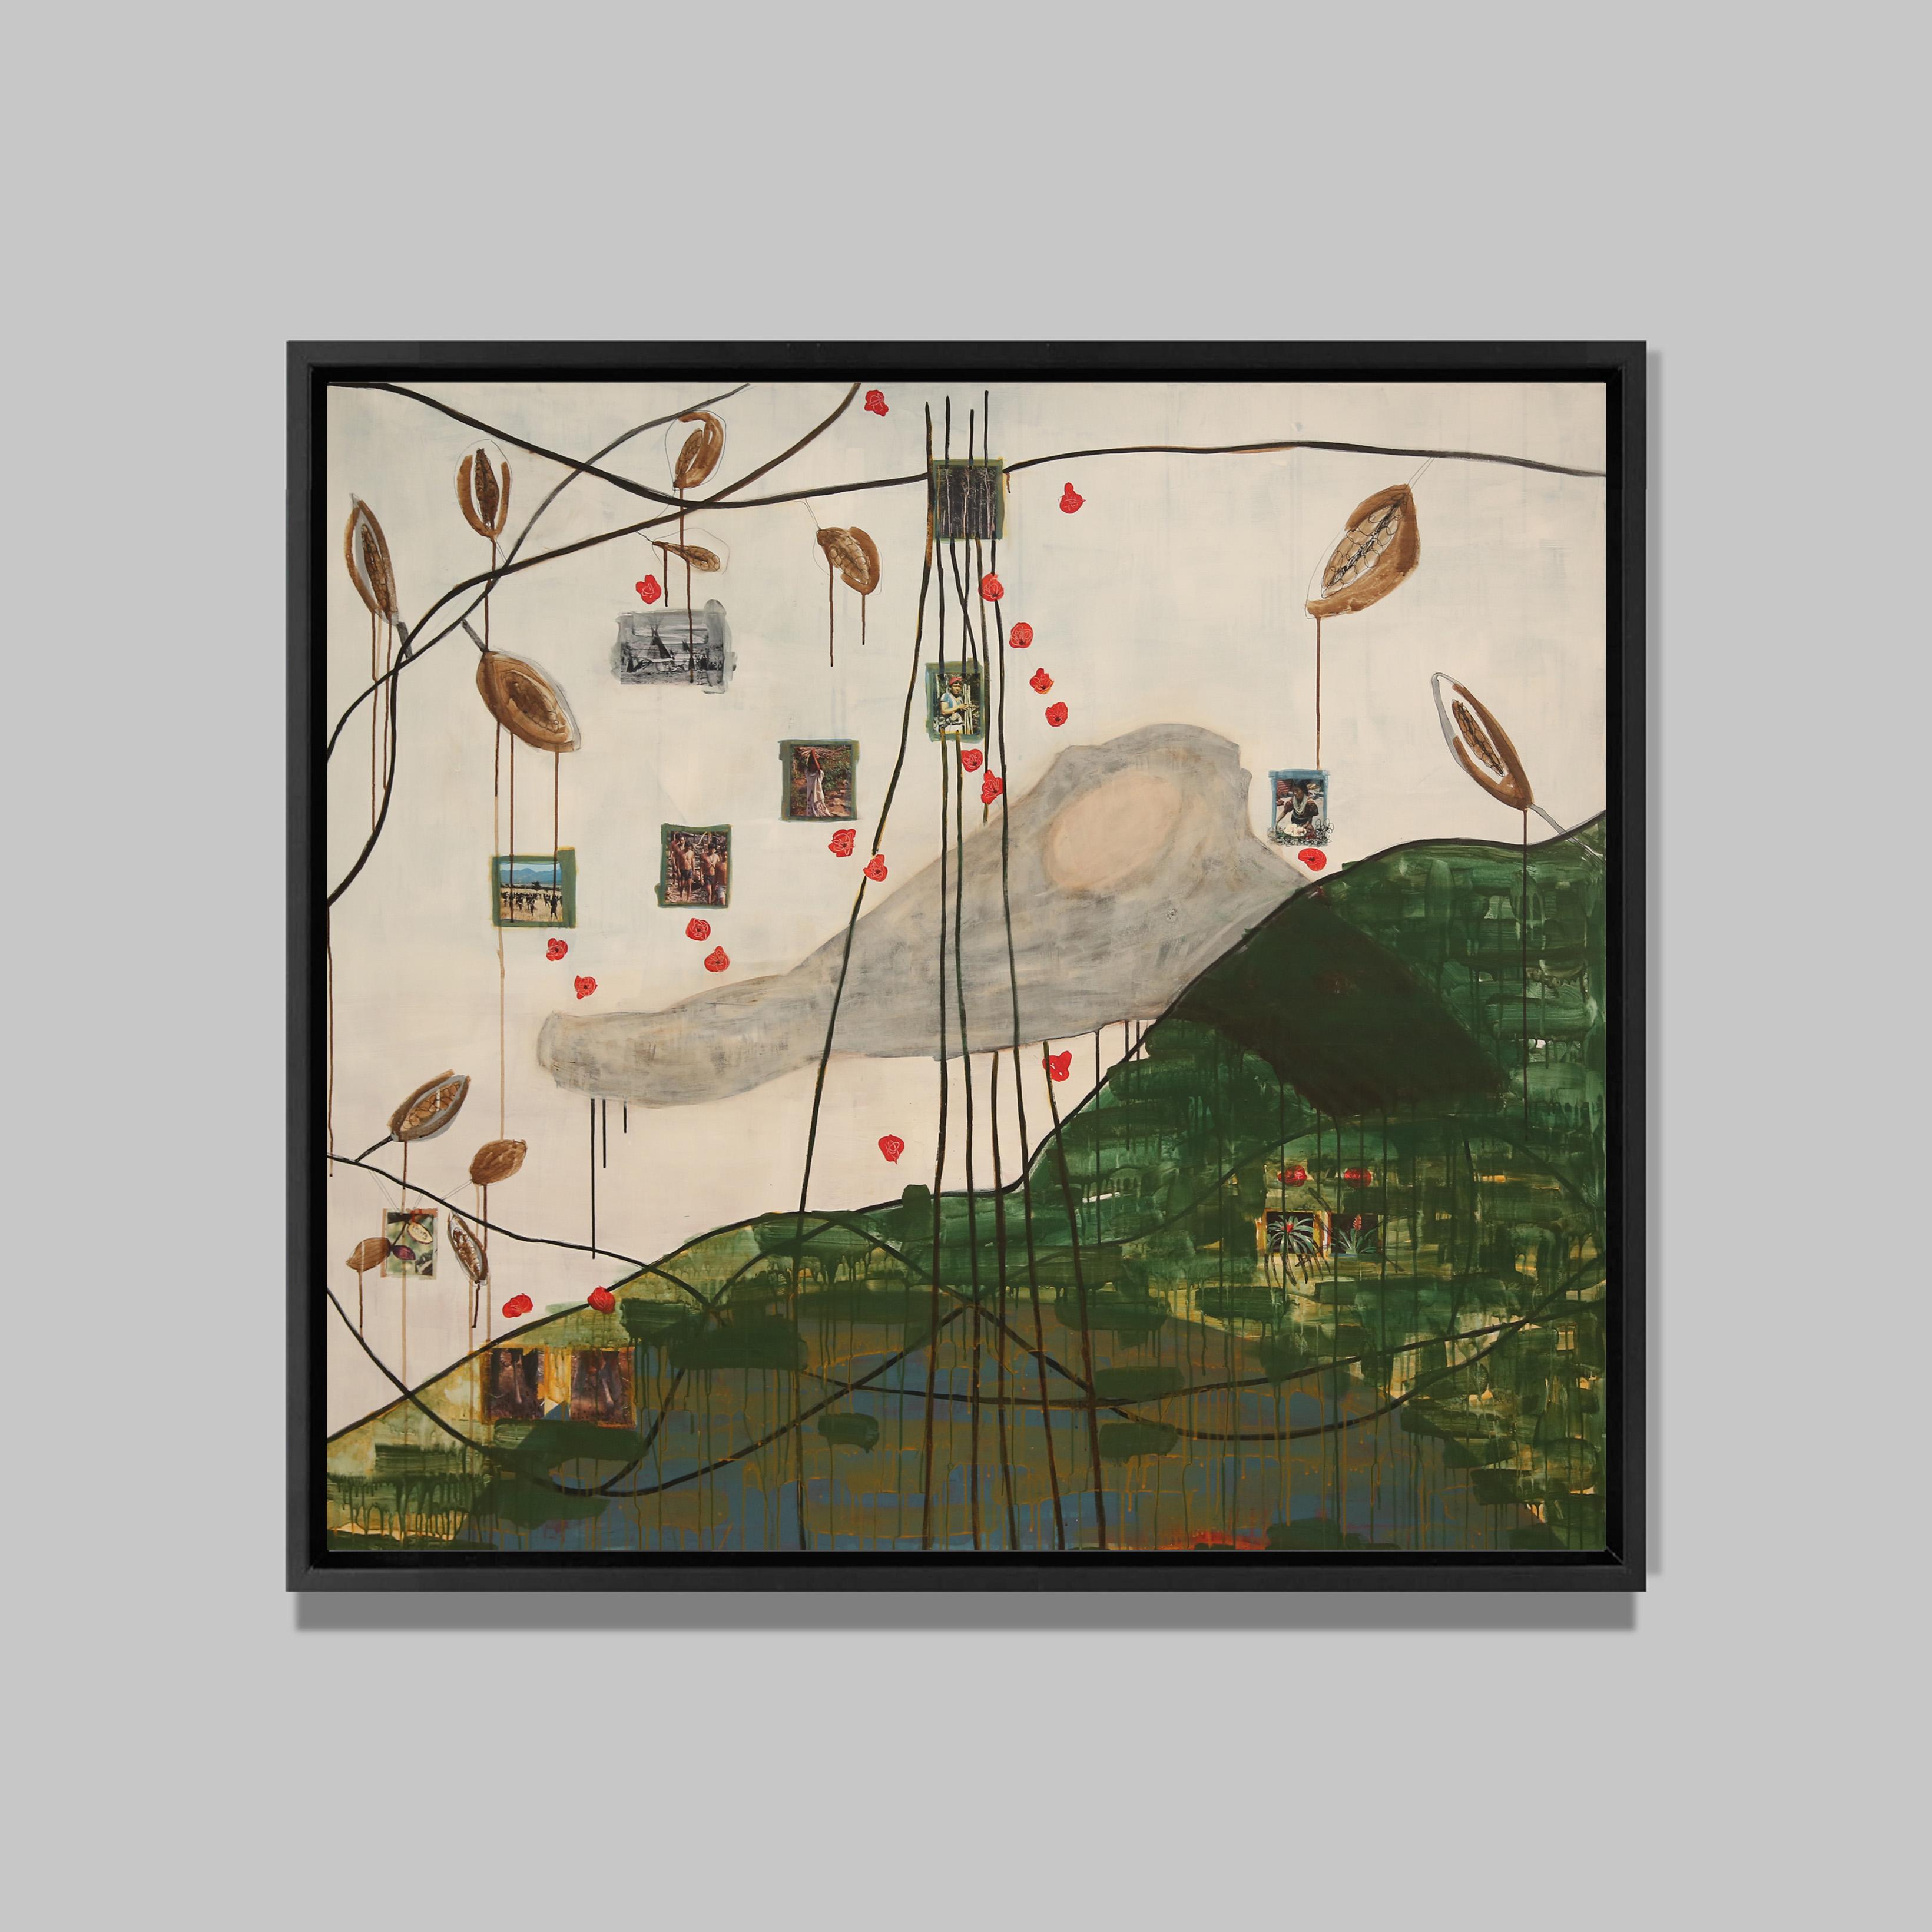 Homo Sapiens, 2015
Acrylique et collages sur toile
156 x 174 cm